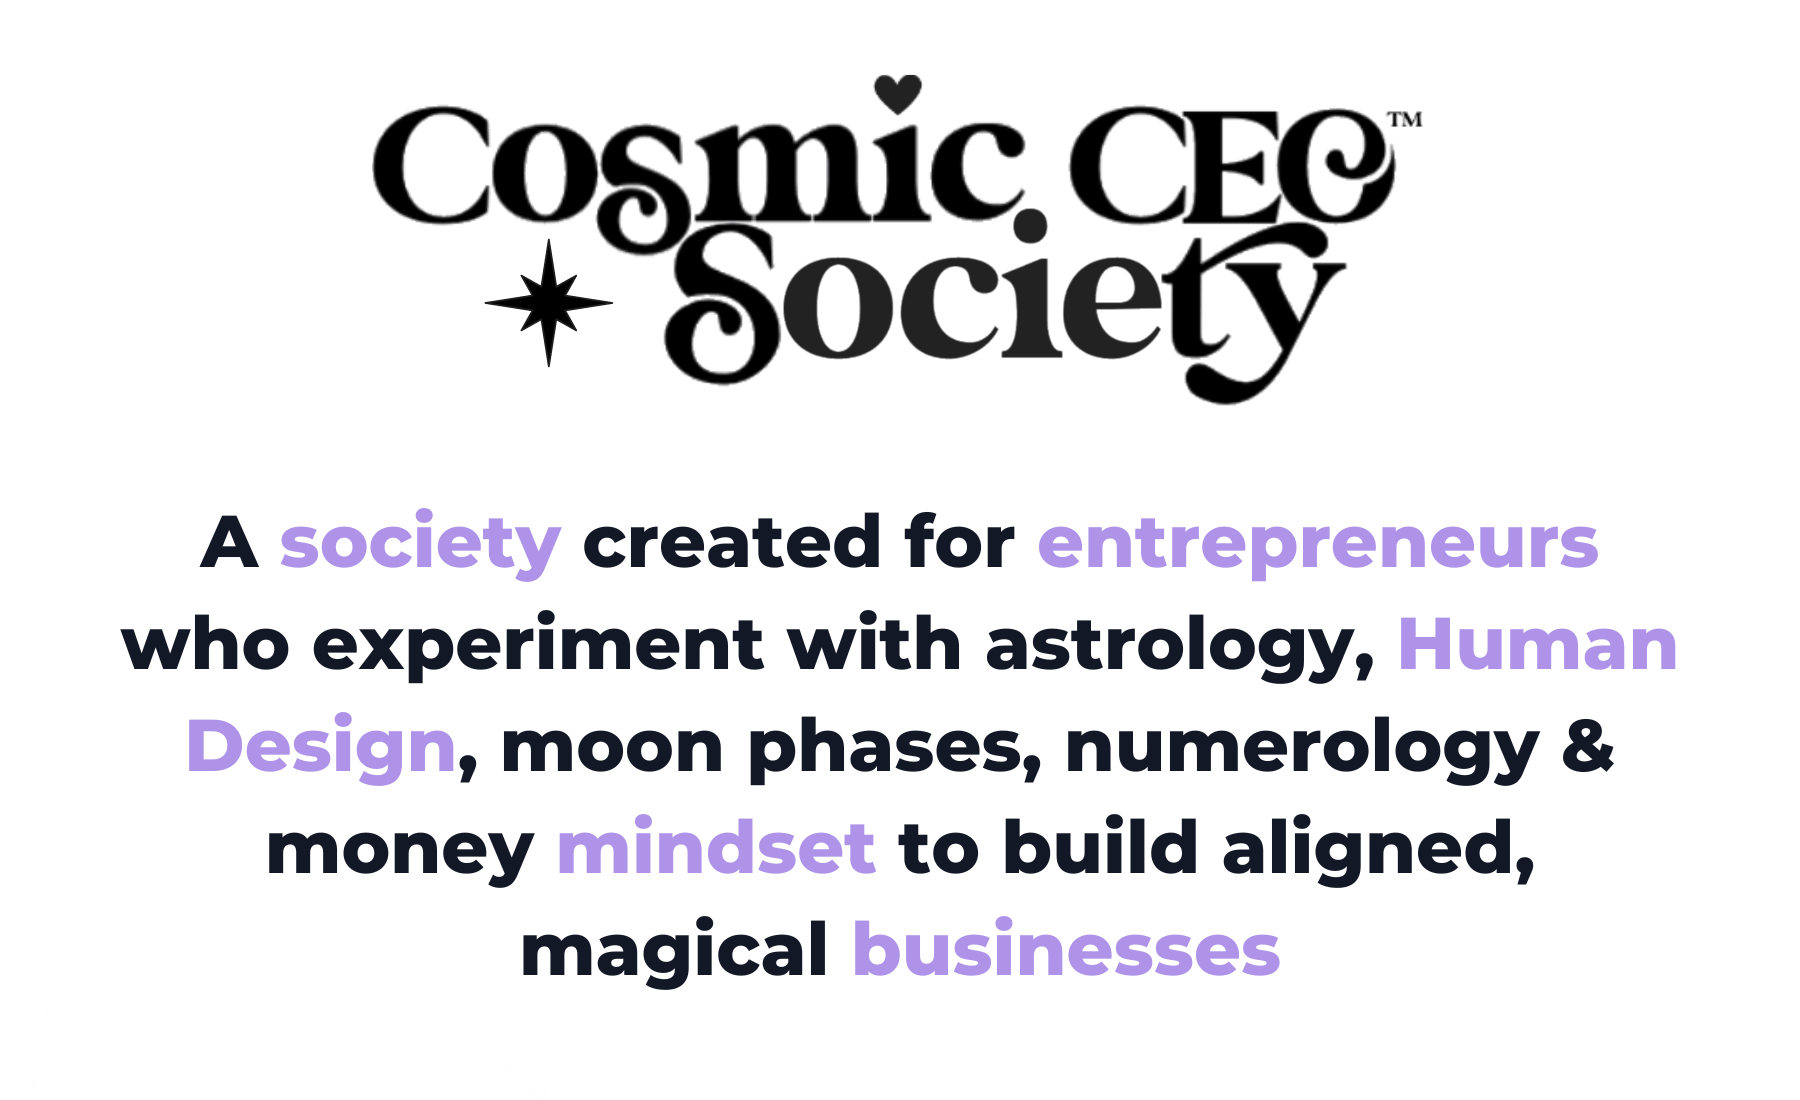 Cosmic CEO Society